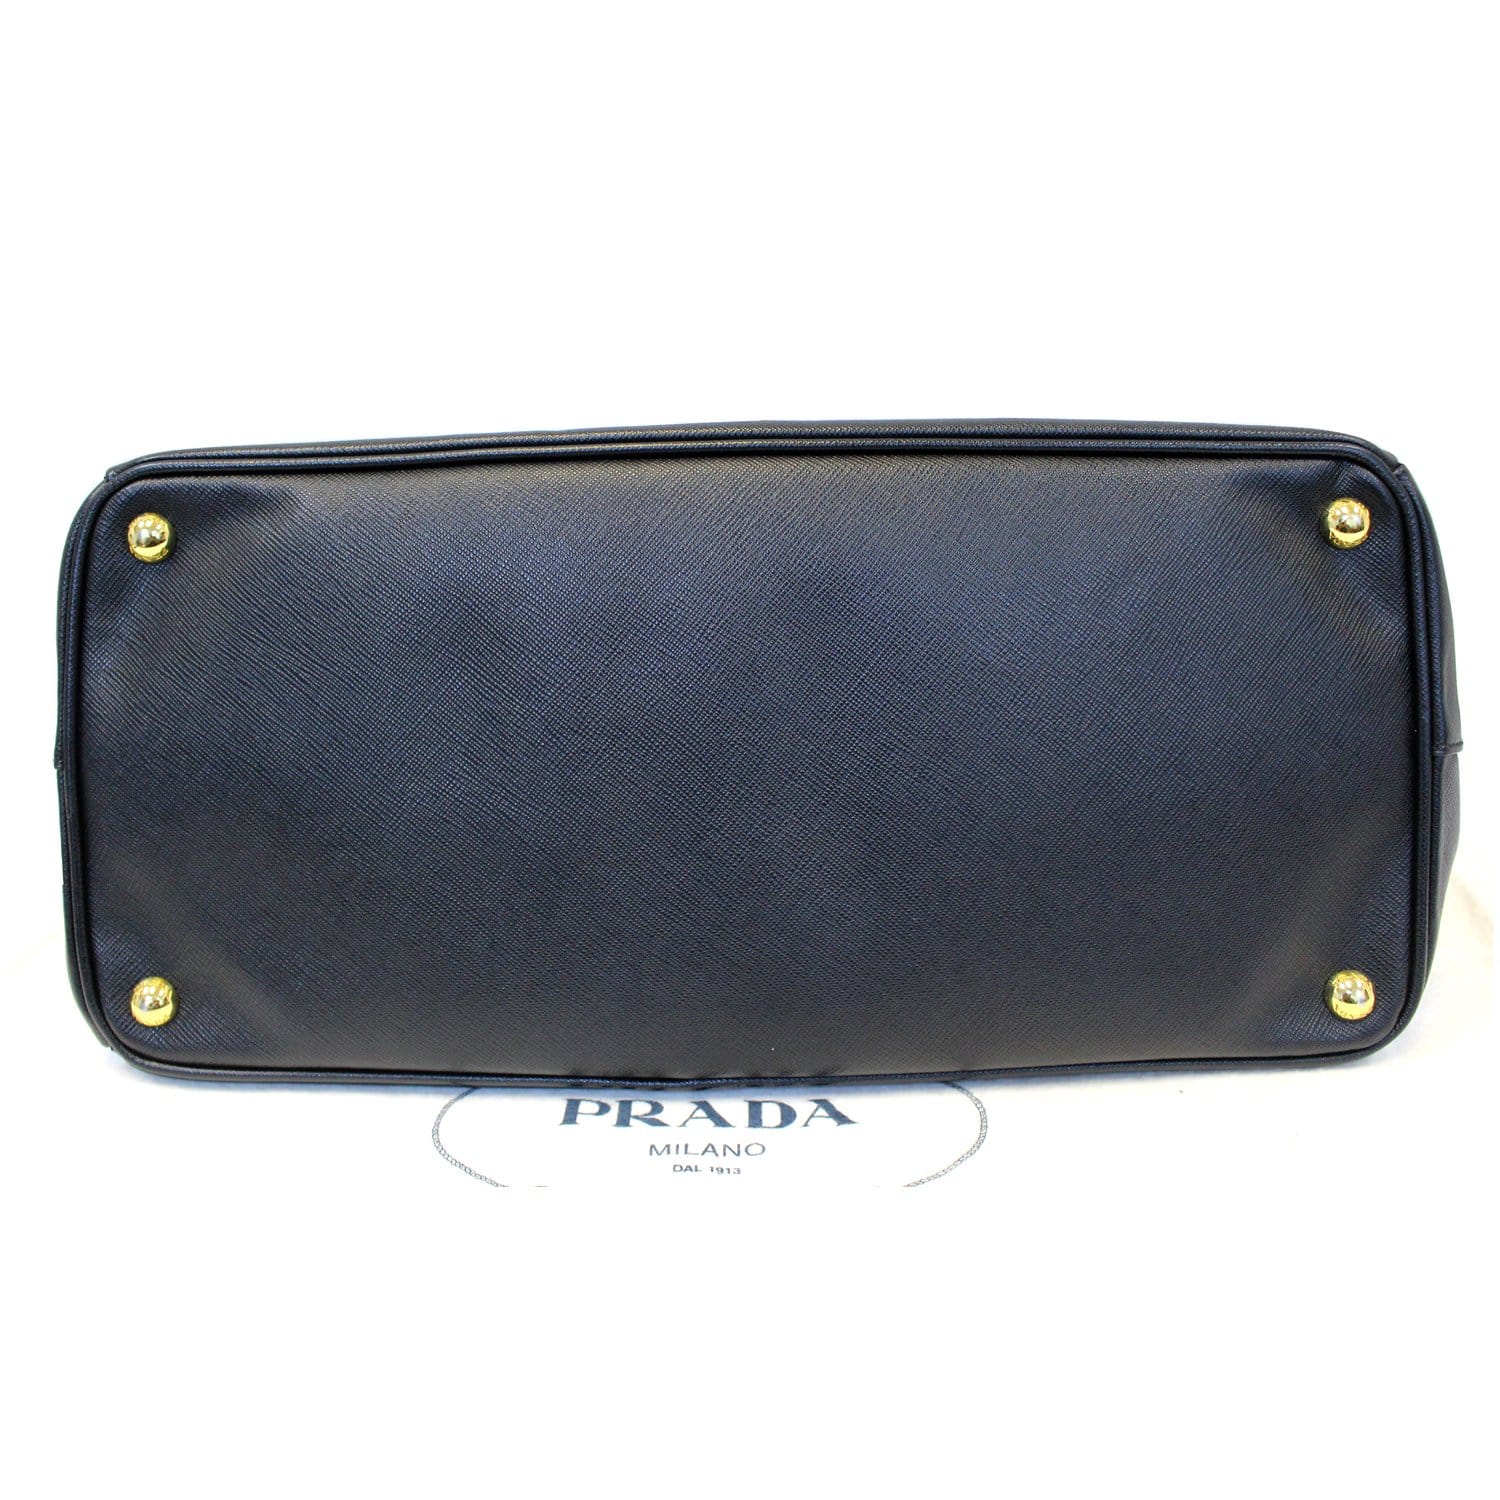 Prada Galleria Medium Black Saffiano Leather Satchel & Crossbody Retail  $4700